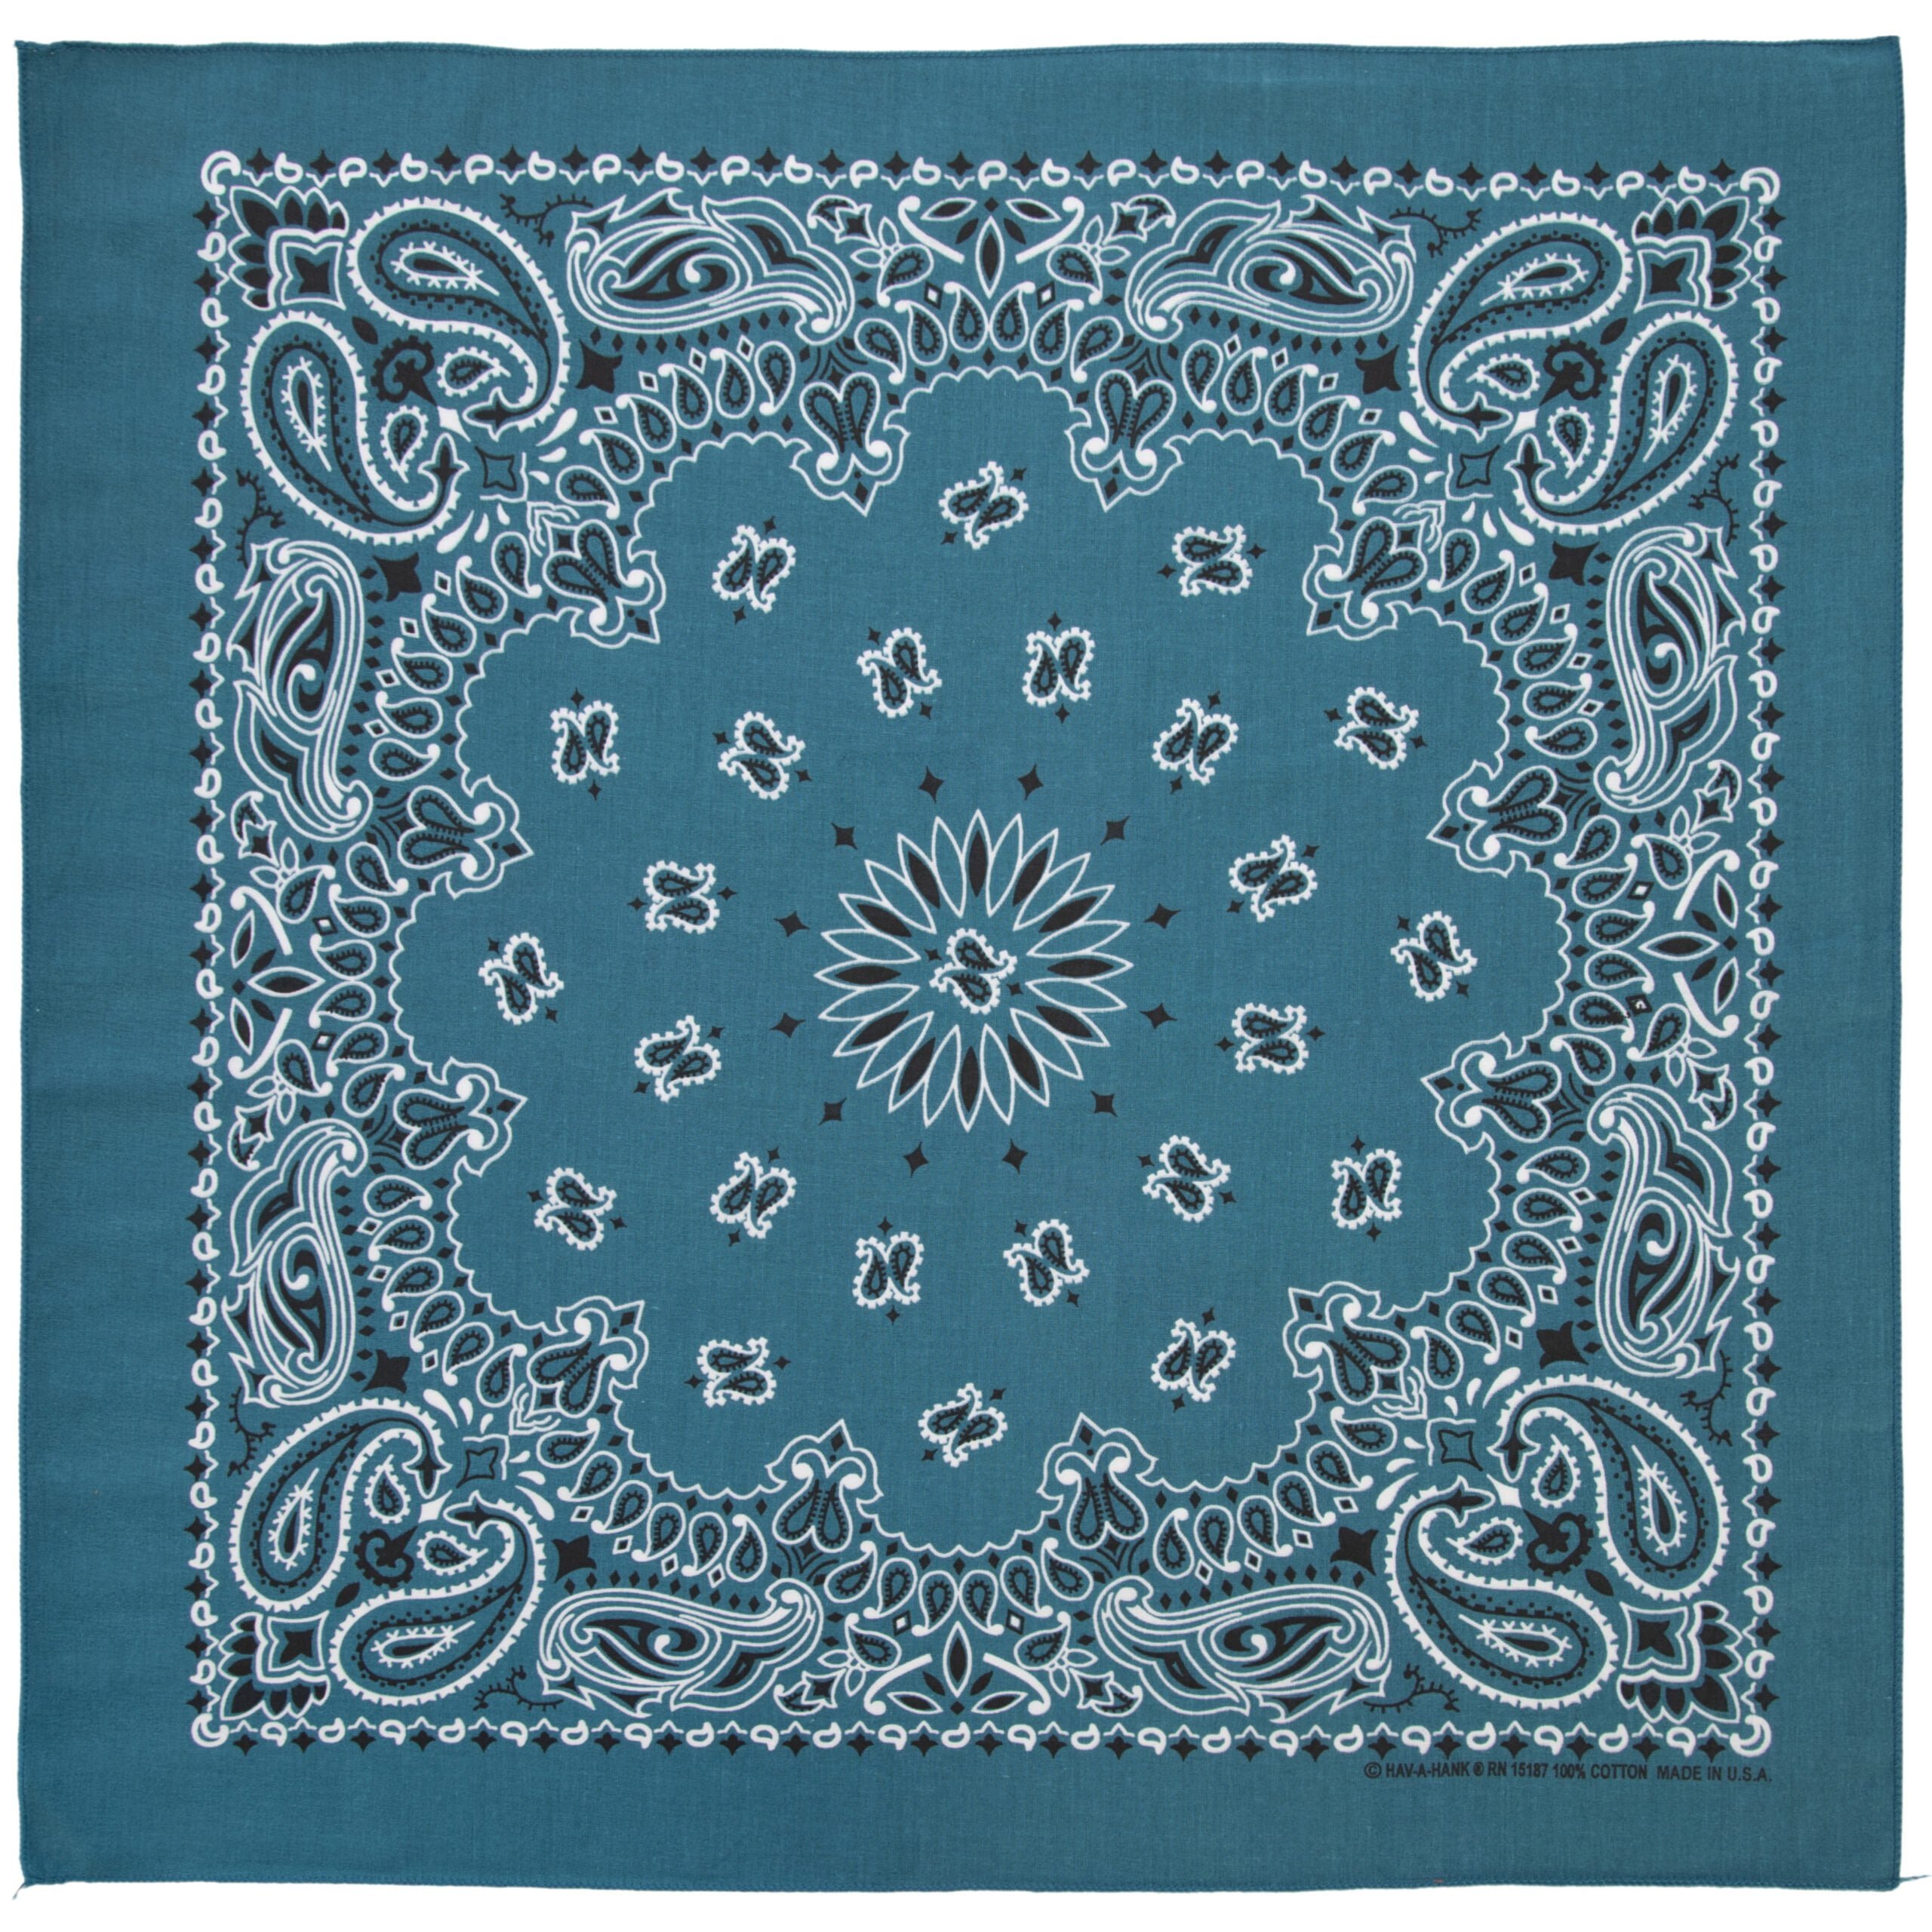 12pcs American Made Mirage Blue Open Center Paisley Handkerchiefs - Dozen Packed 22x22